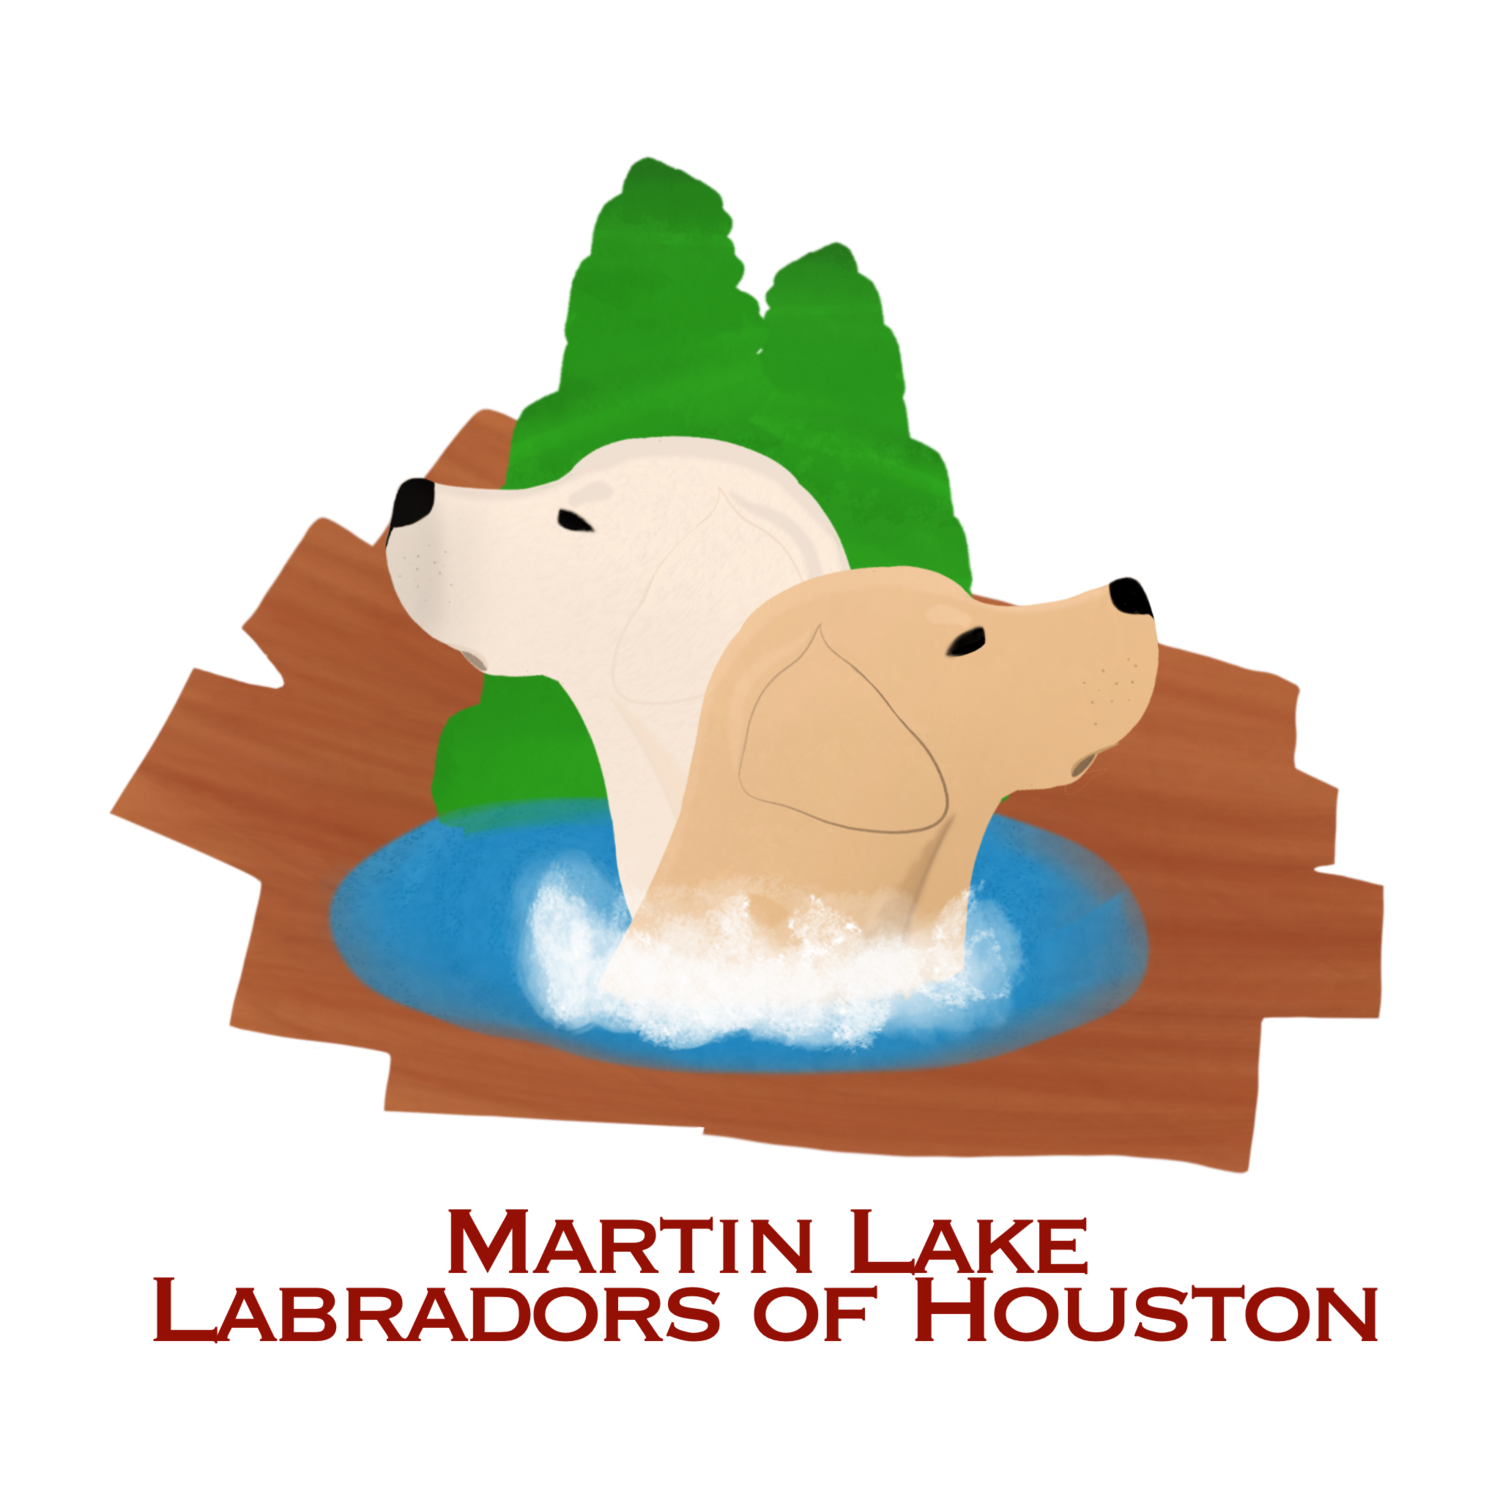 Martin Labradors of Houston